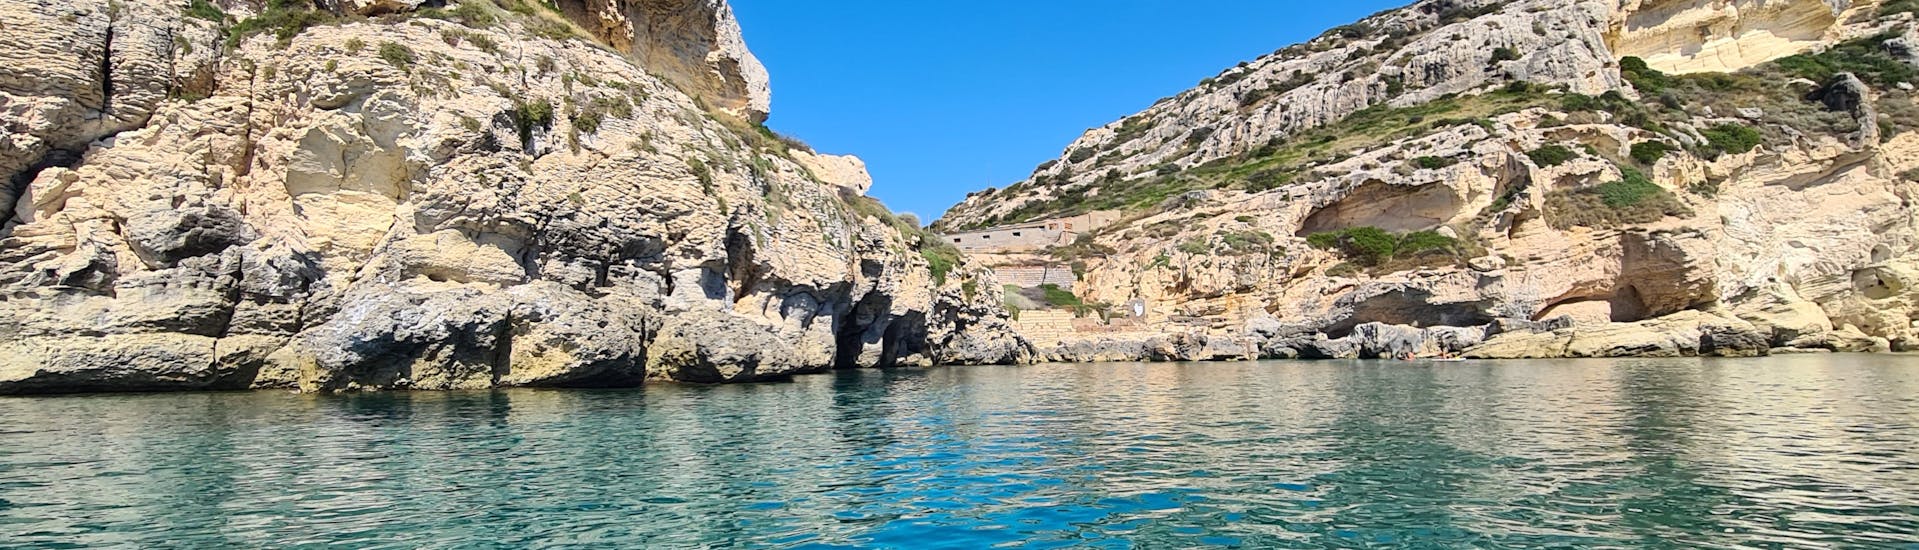 Sicht auf den Golf von Cagliari vom Boot von Blue Rent Boat Cagliari während der RIB Bootstour im Golf von Cagliari mit Stop am Poetto Strand.